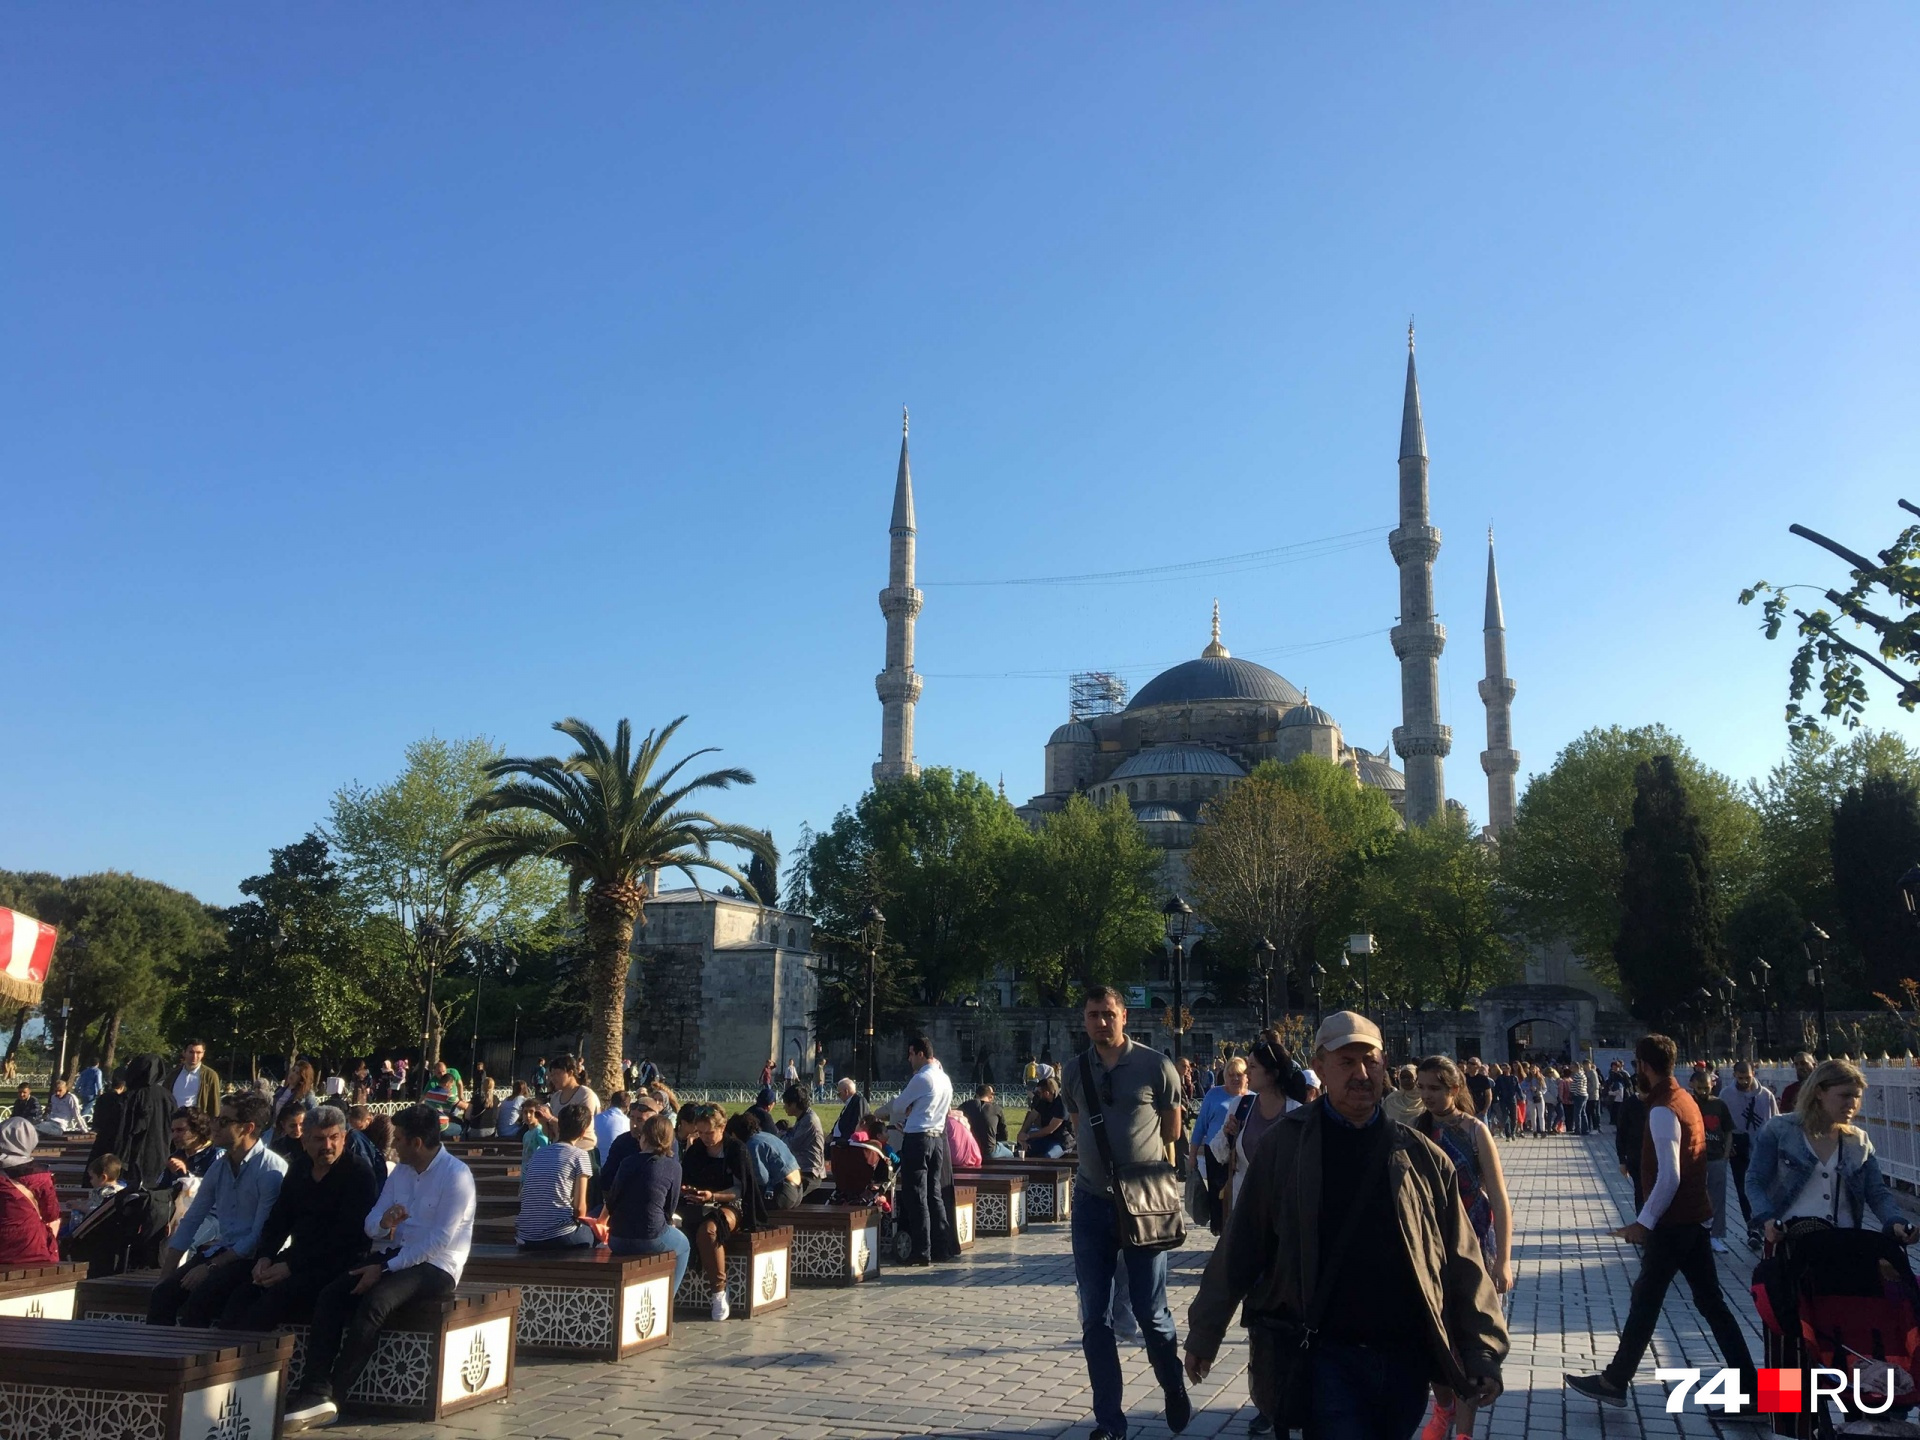 Челябинцам осталась одна заграничная радость — Турция. Билеты на рейсы в Анталью и Стамбул выкупили еще месяц-полтора назад